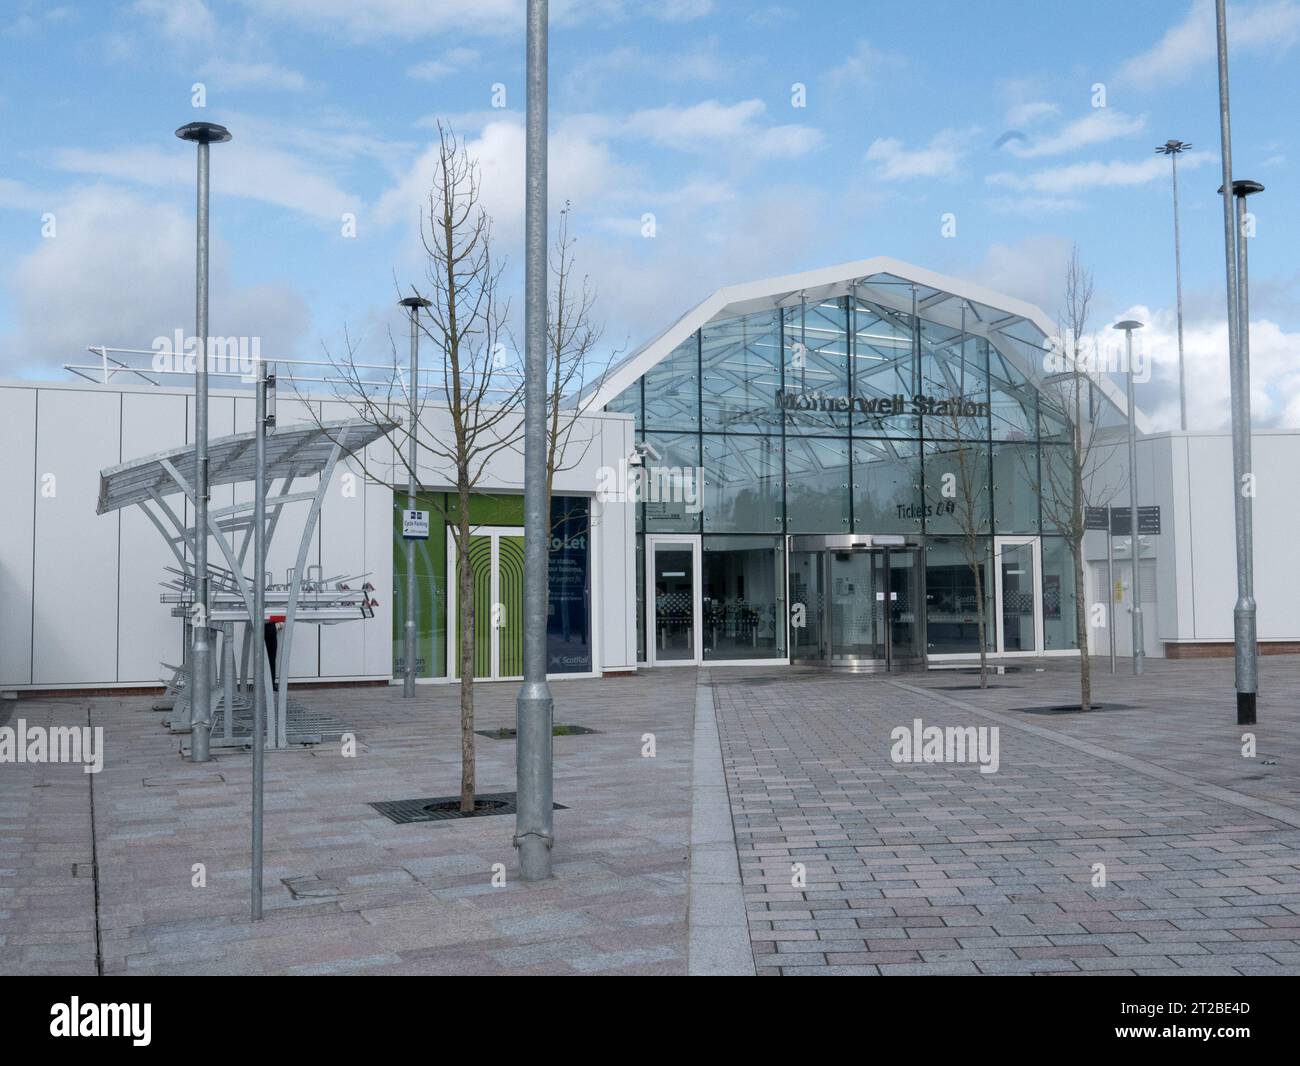 Vue de face de la gare de Motherwell réaménagée Banque D'Images